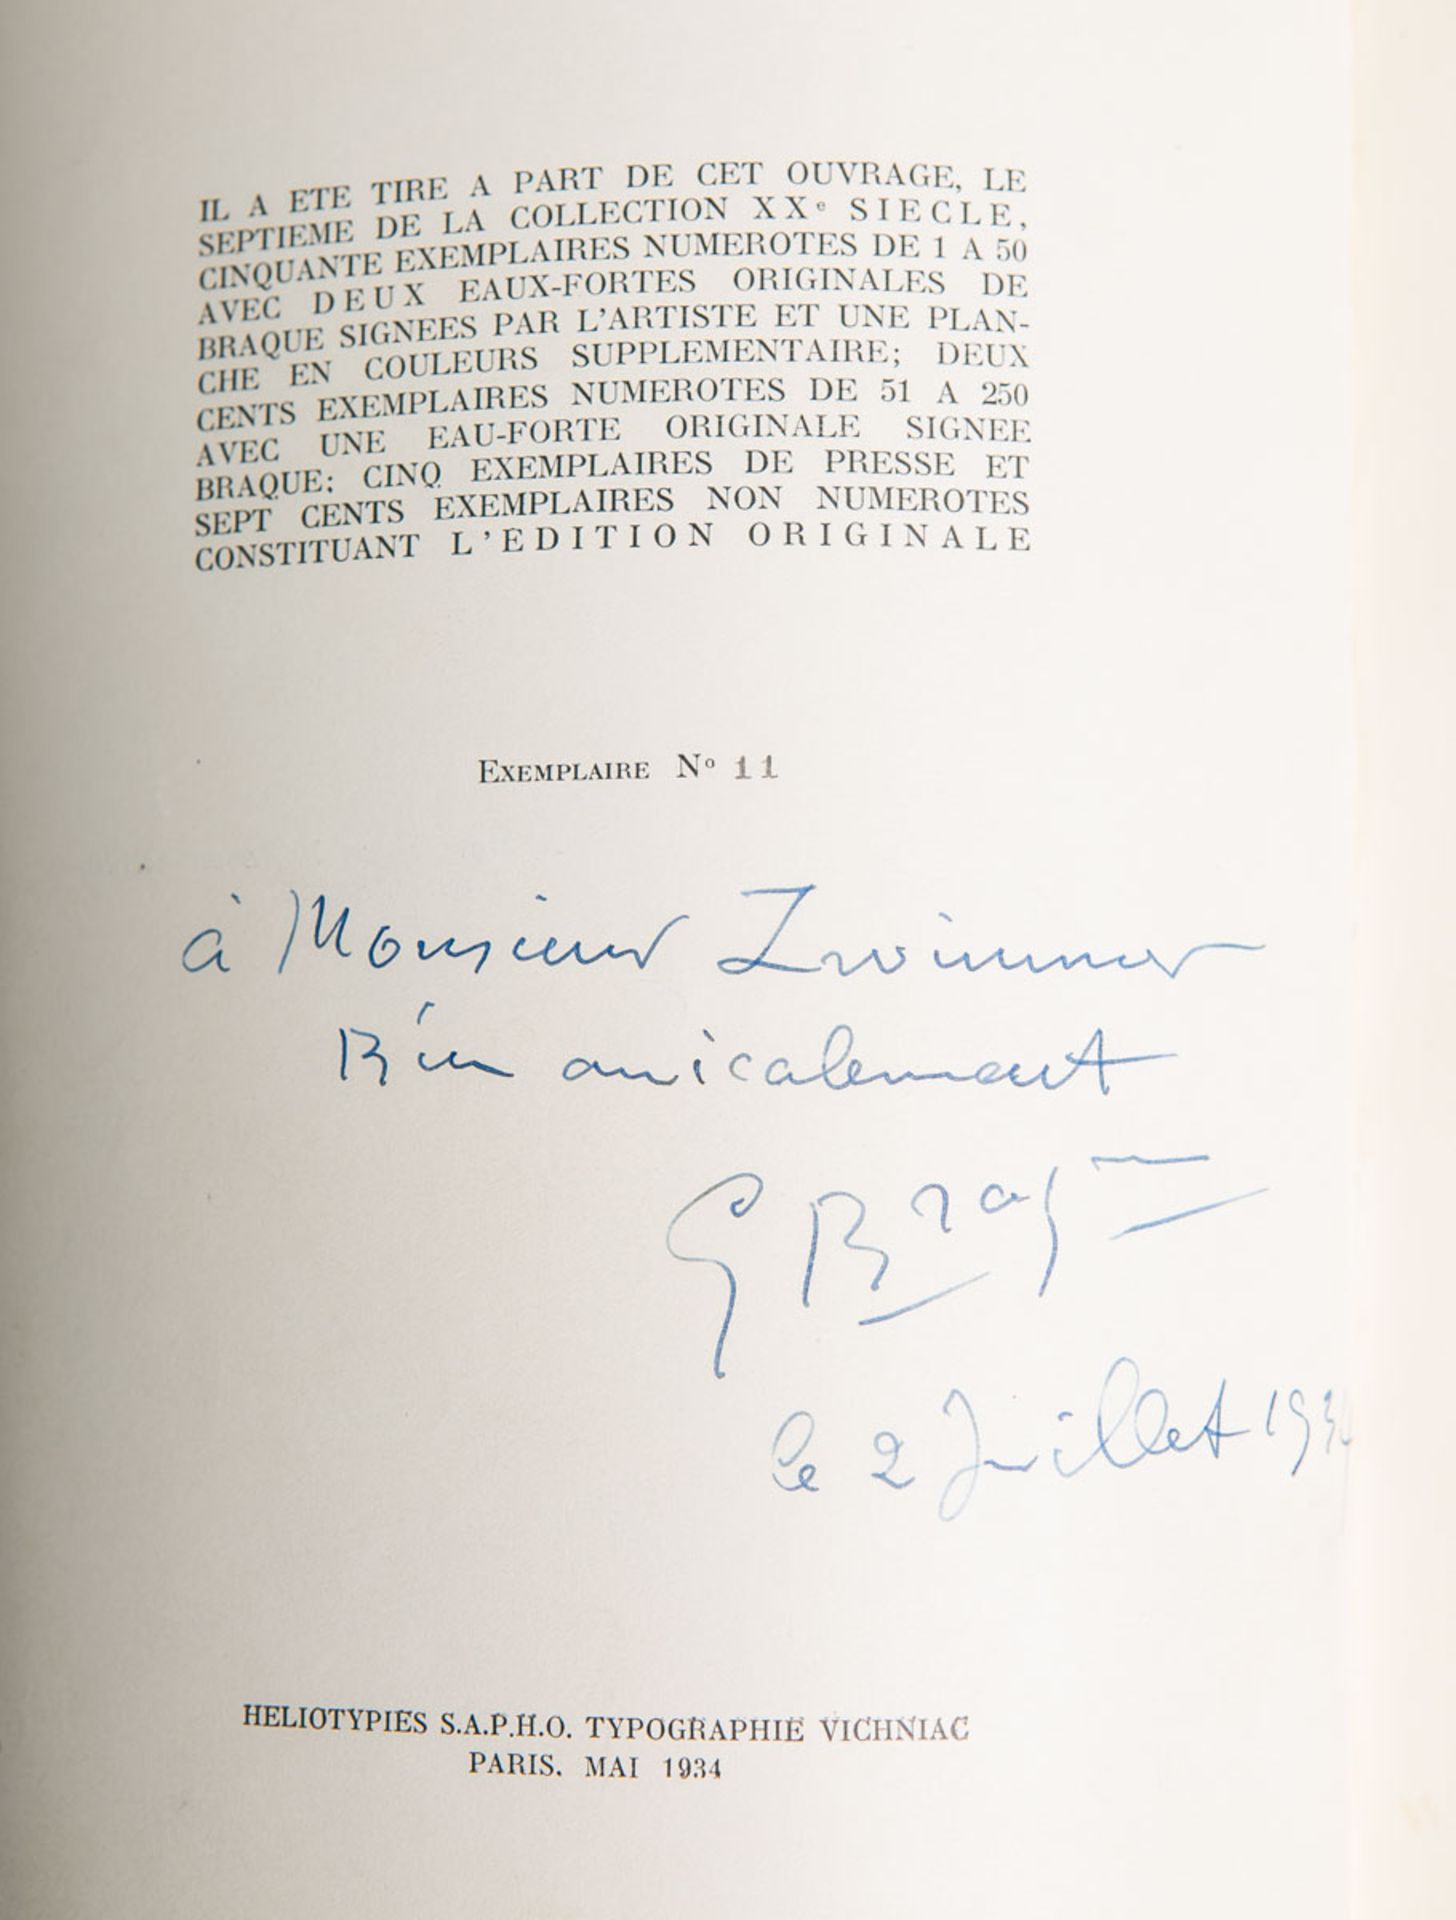 Einstein, Carl (Hrsg.), "Georges Braque" - Image 2 of 2